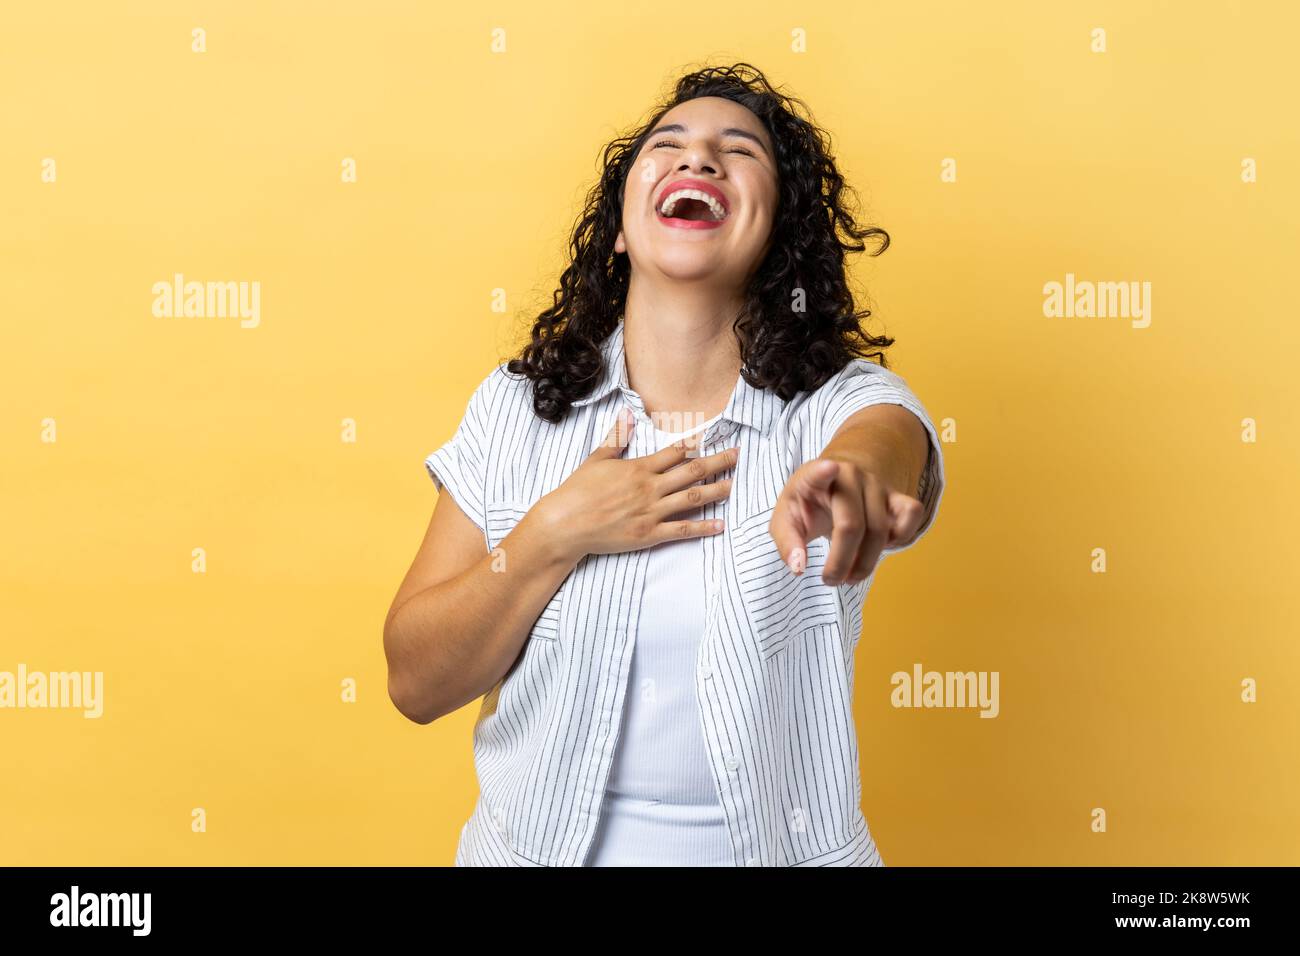 Porträt einer glücklichen Frau mit dunklen welligen Haaren, die laut lacht und mit dem Finger auf die Kamera zeigt, lustigen Witz hört, den Bauch hält. Innenaufnahme des Studios isoliert auf gelbem Hintergrund. Stockfoto